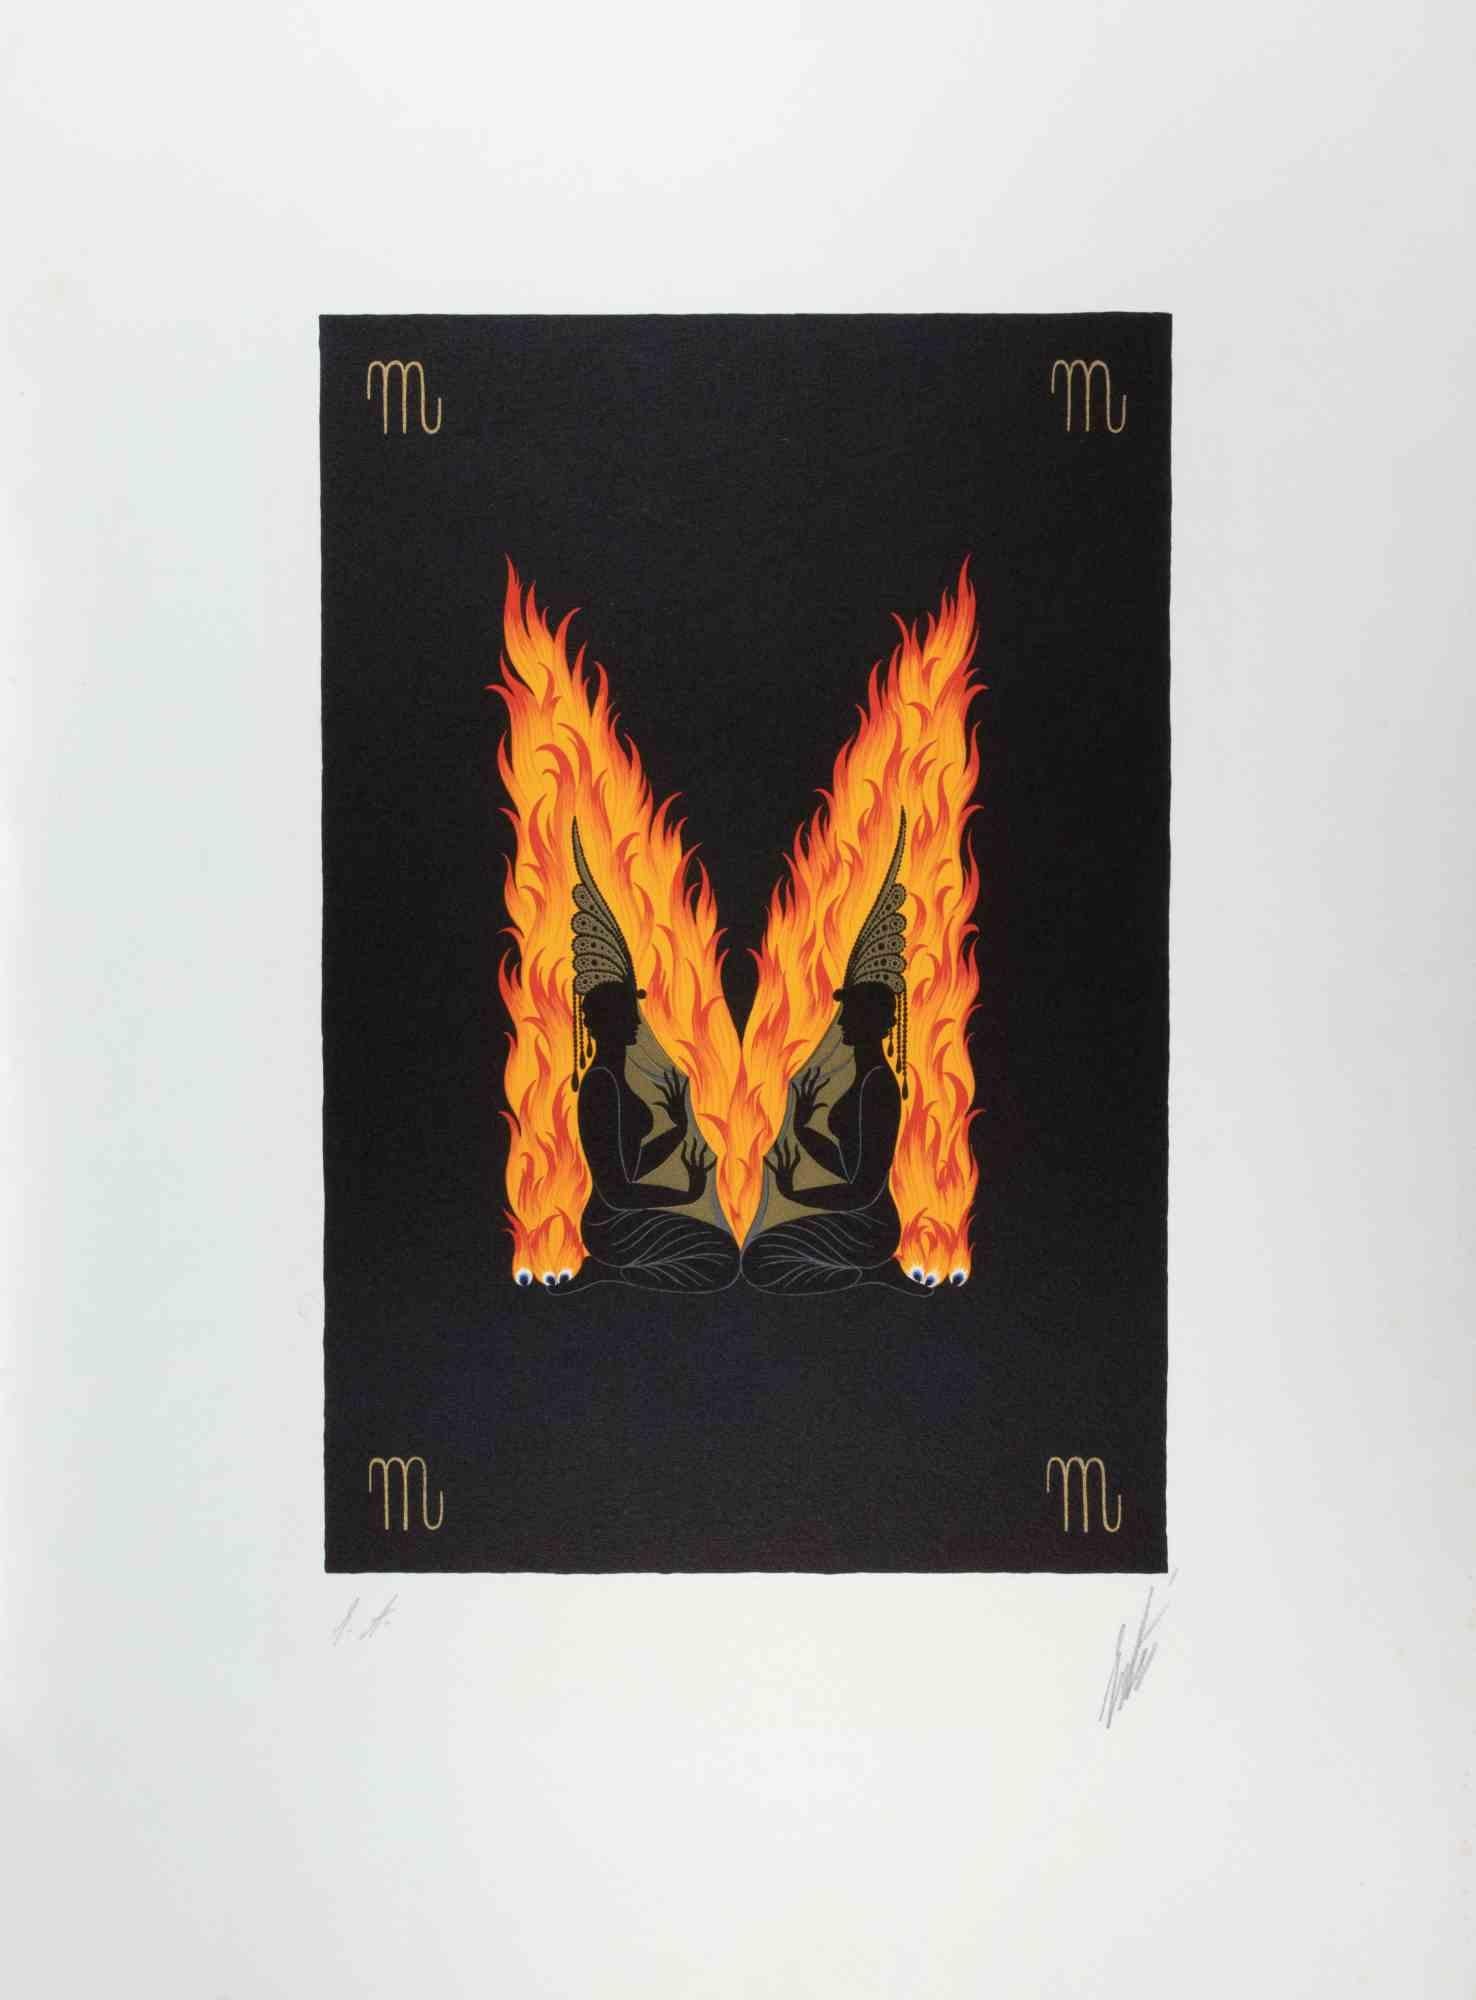 Buchstabe M- aus der Suite Letters of the Alphabet ist ein zeitgenössisches Kunstwerk von Erté (Romain de Tirtoff).

Lithographie und Siebdruck.

Das Kunstwerk stammt aus der Suite "Letters of the Alphabet", 1976.

Handsigniert am unteren Rand.